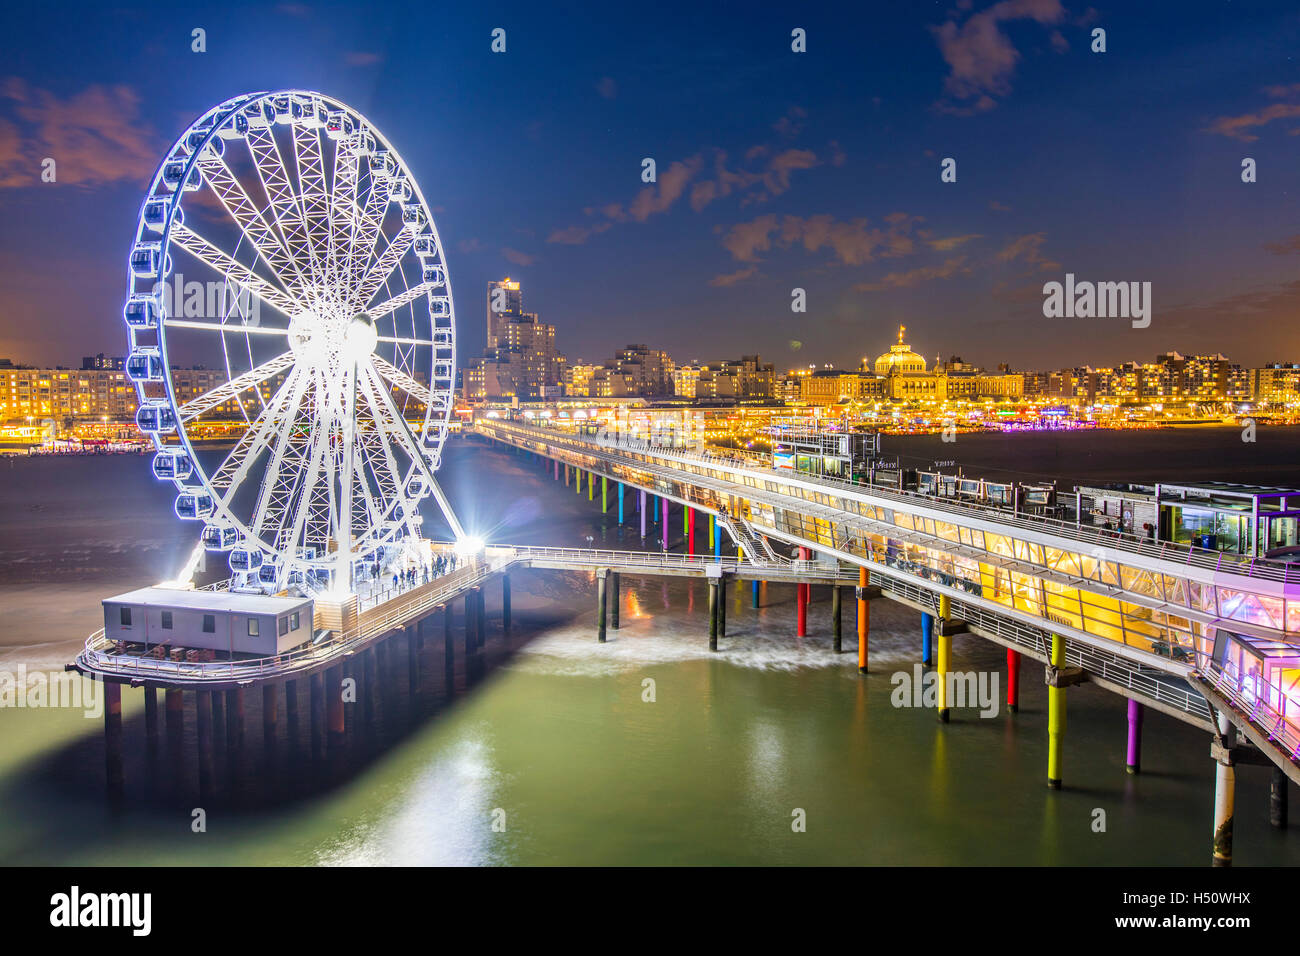 Scheveningen, Küsten Viertel von den Haag, Niederlande, renoviert am Meer Pier, Riesenrad, Restaurants, Unterhaltung, Stockfoto